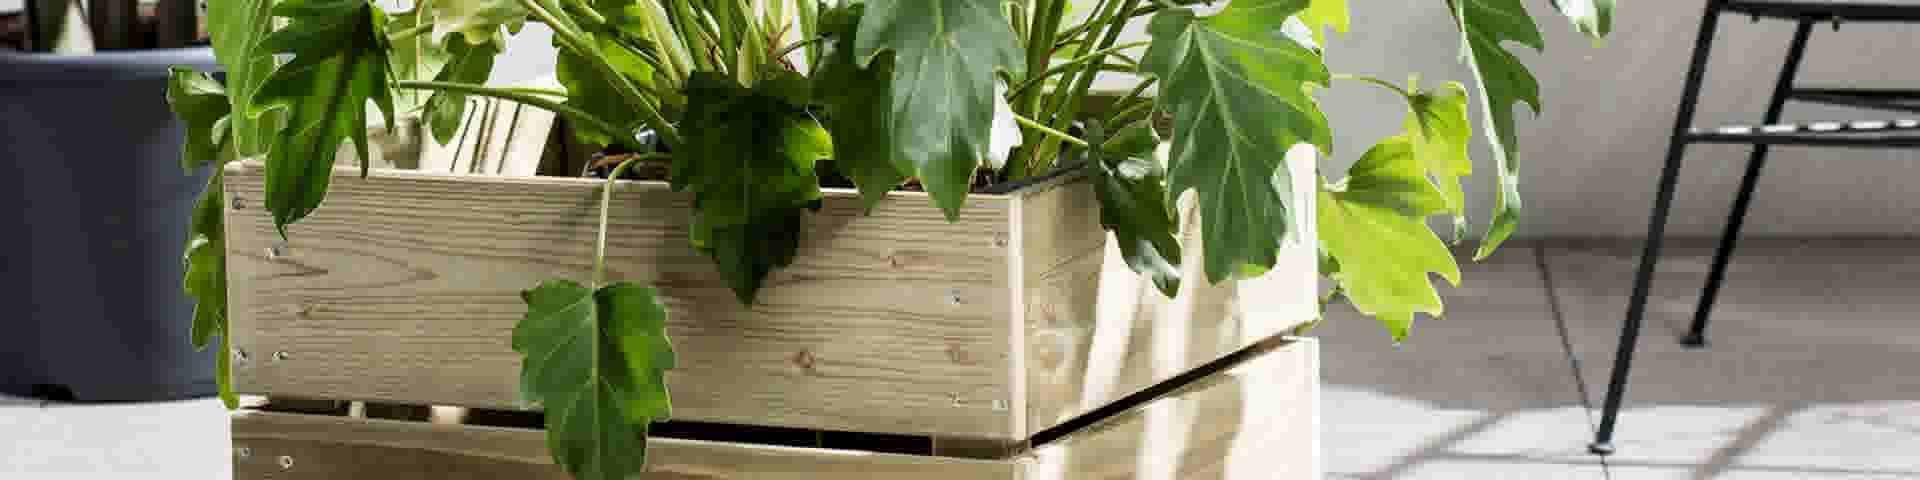 lavendel controller Dubbelzinnig Met hout maak je zelf een mooie plantenbak of bloembak: bekijk ons  stappenplan | GAMMA